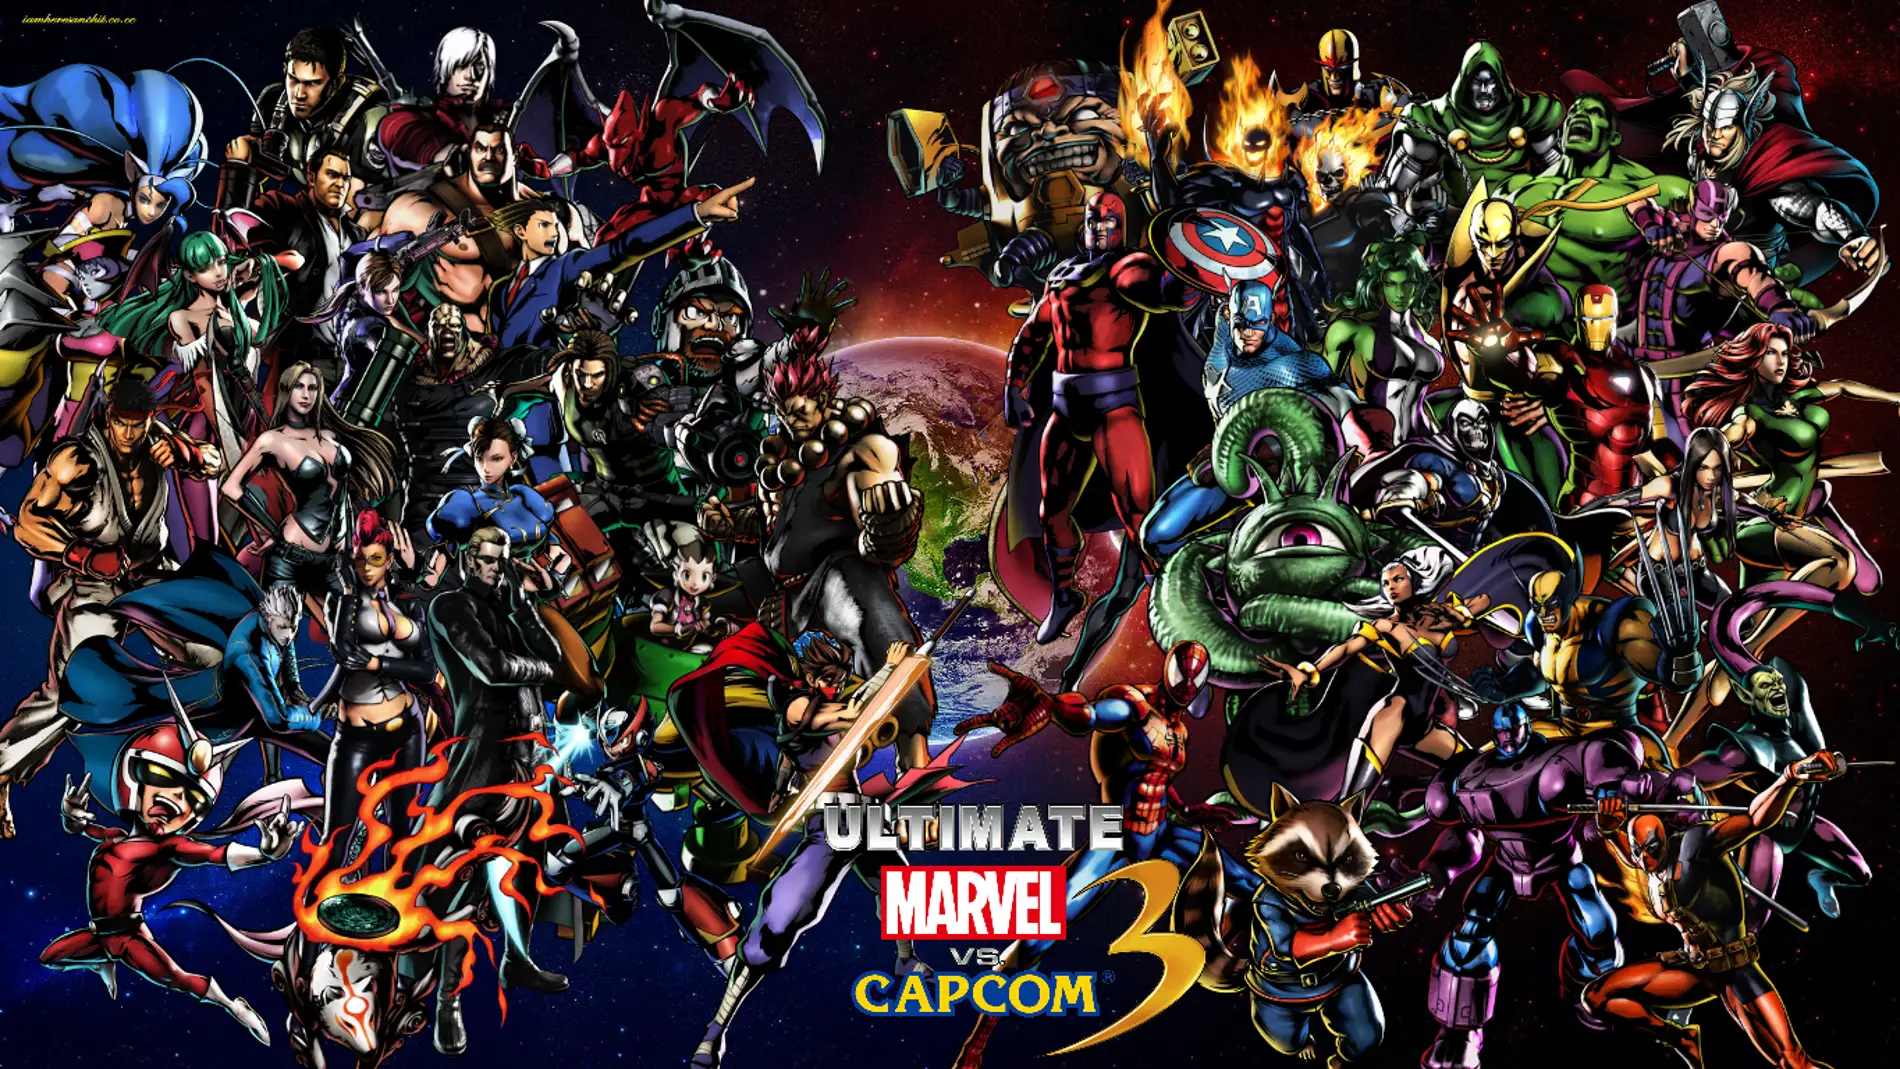 Ultimate Marve vs. Capcom 3